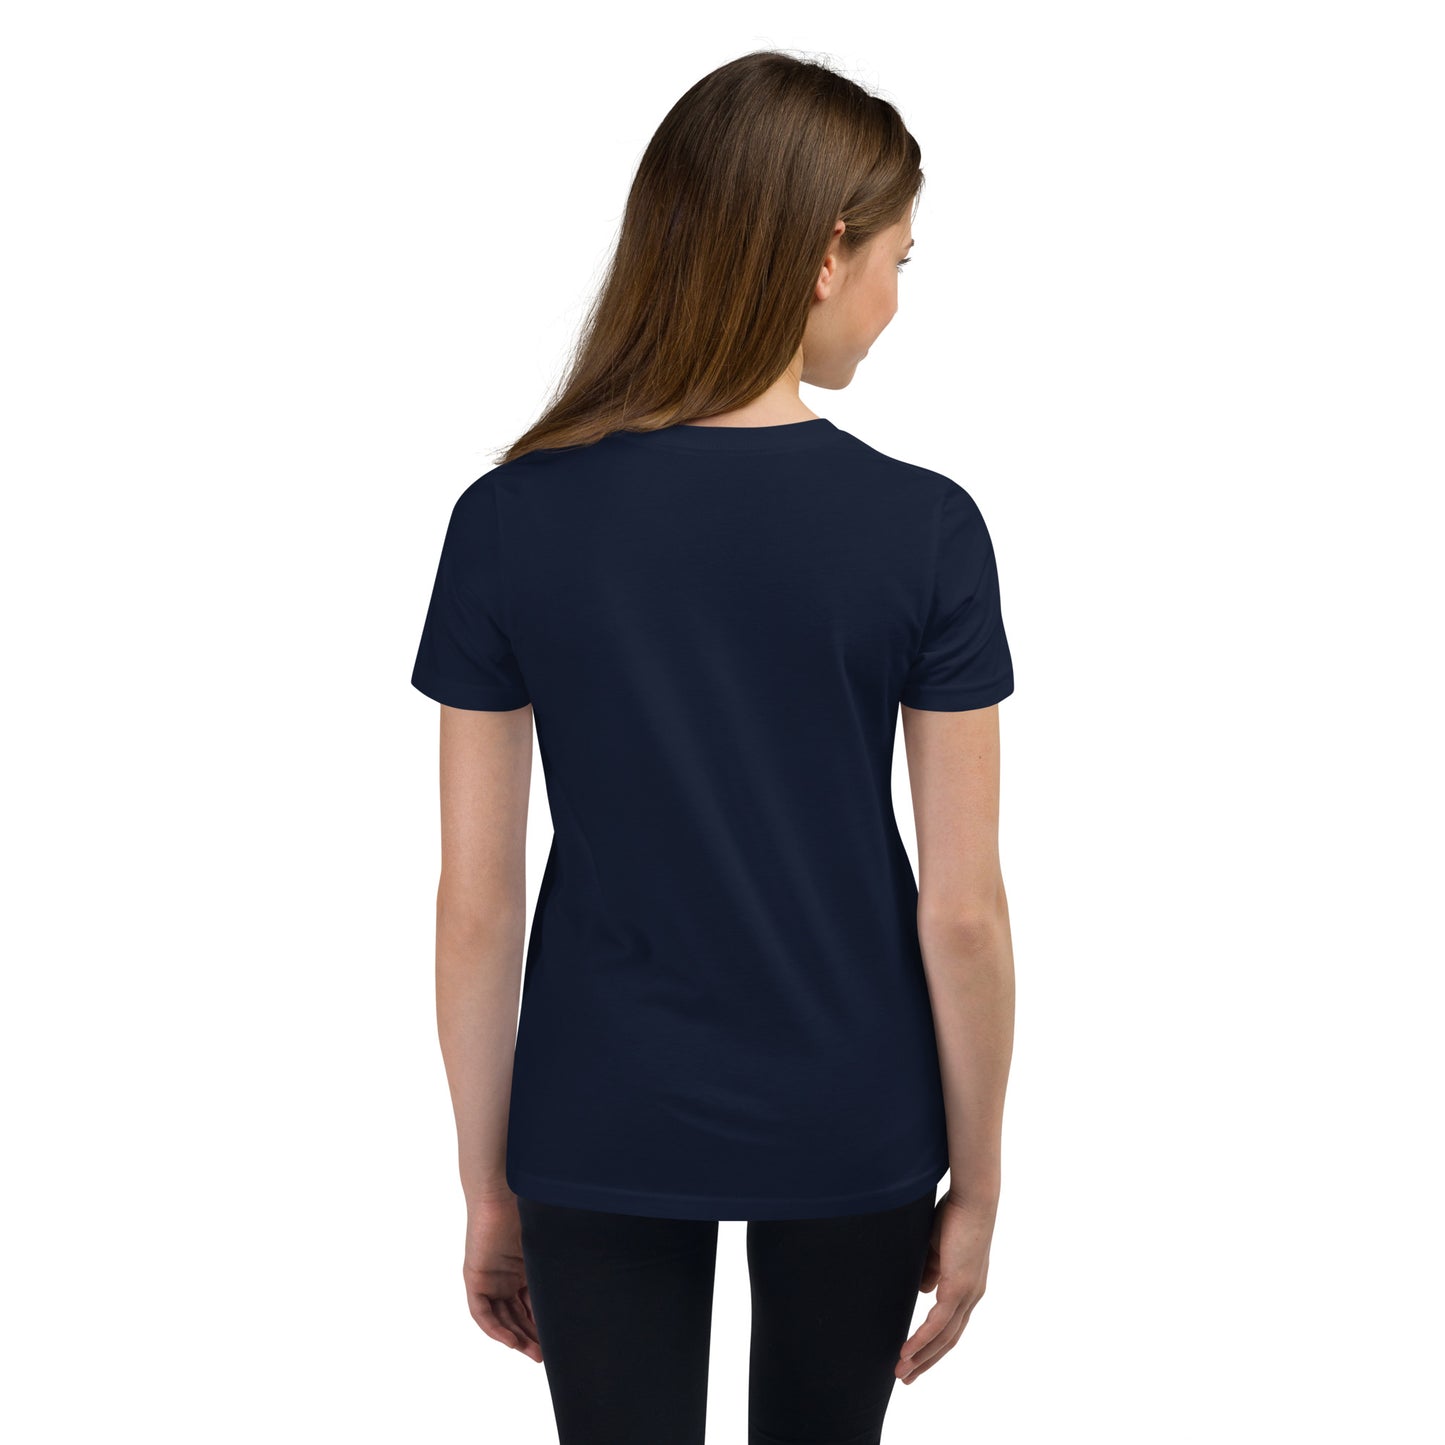 Camiseta de manga corta júnior unisex